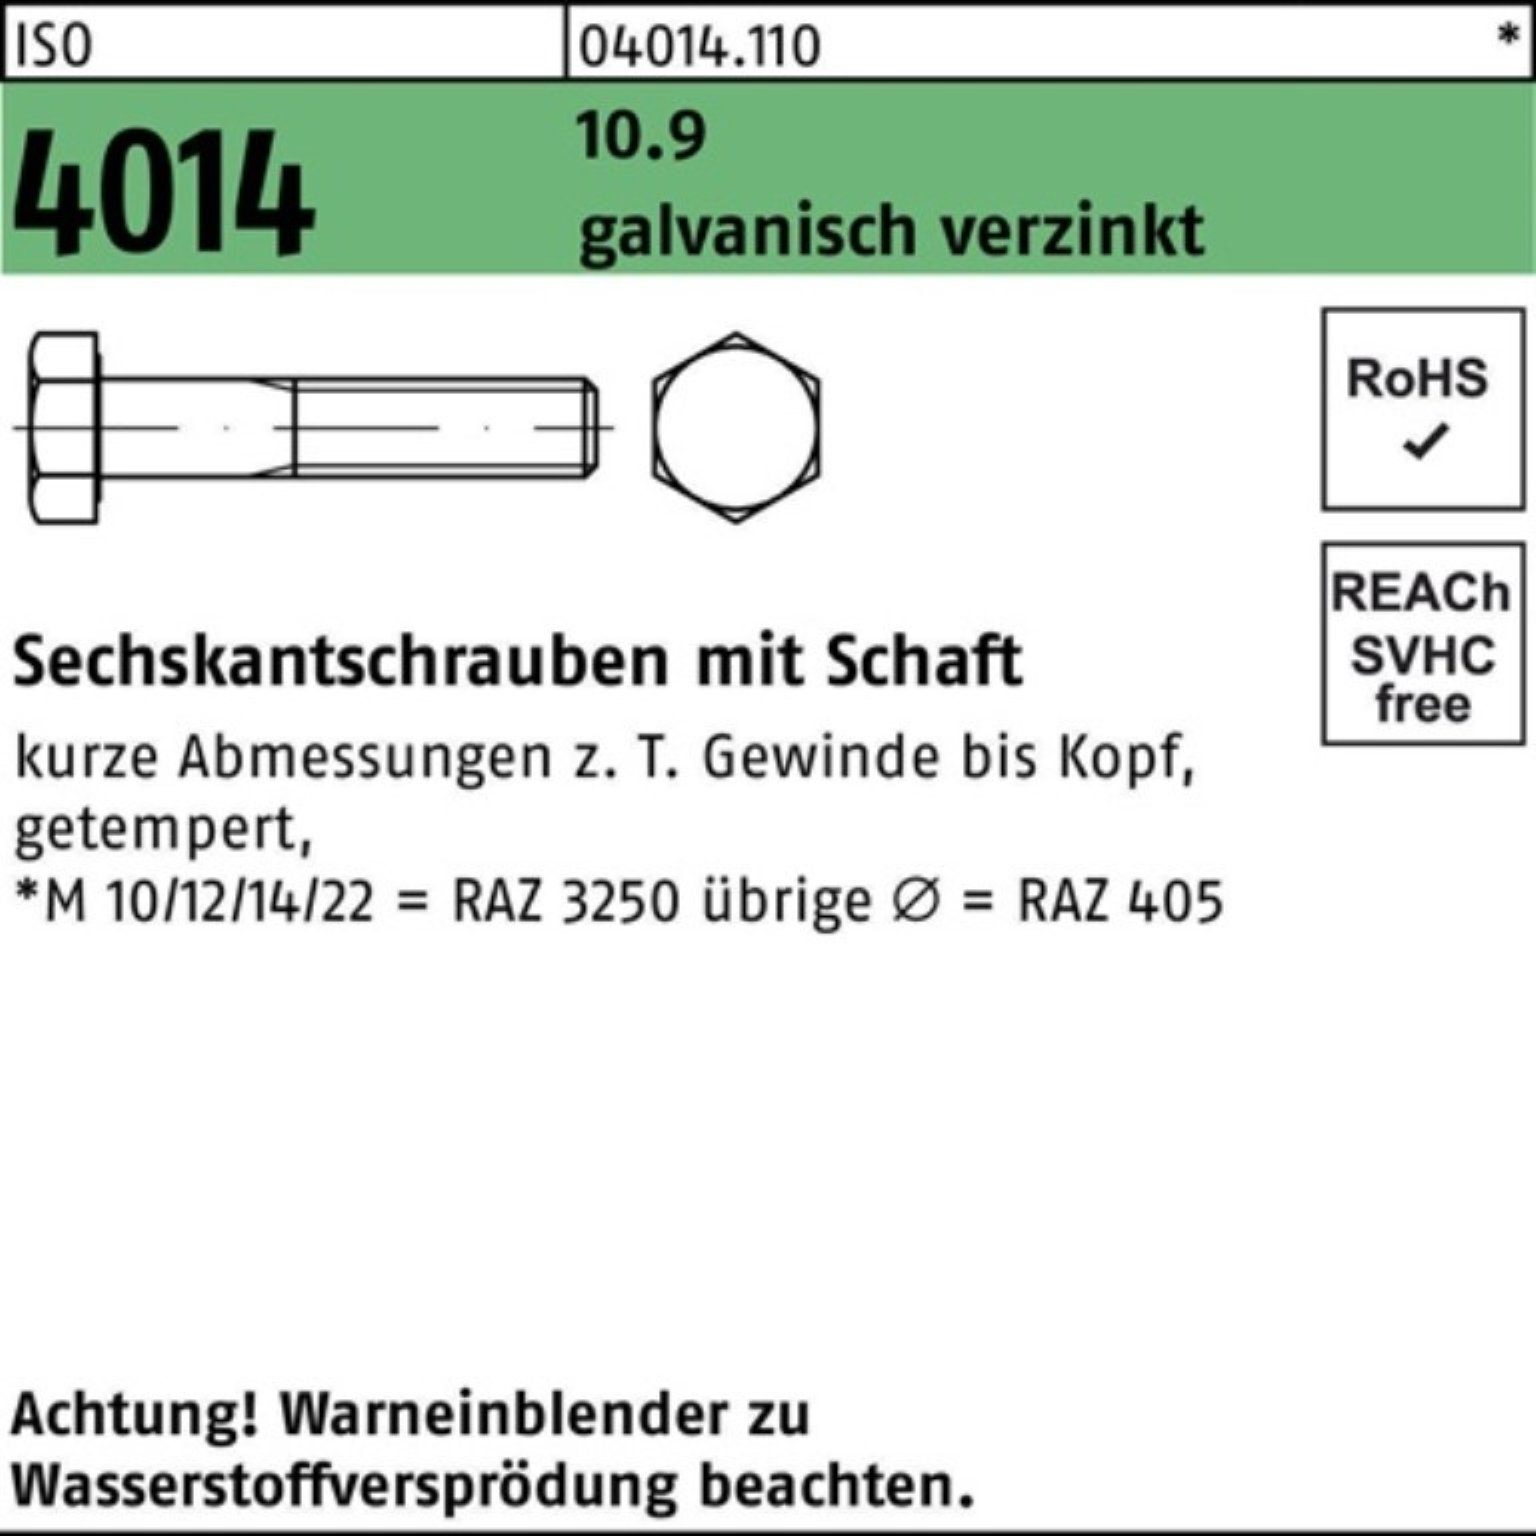 Bufab Sechskantschraube 100er galv.verz. 4014 ISO Pack Schaft Sechskantschraube 140 M27x 10.9